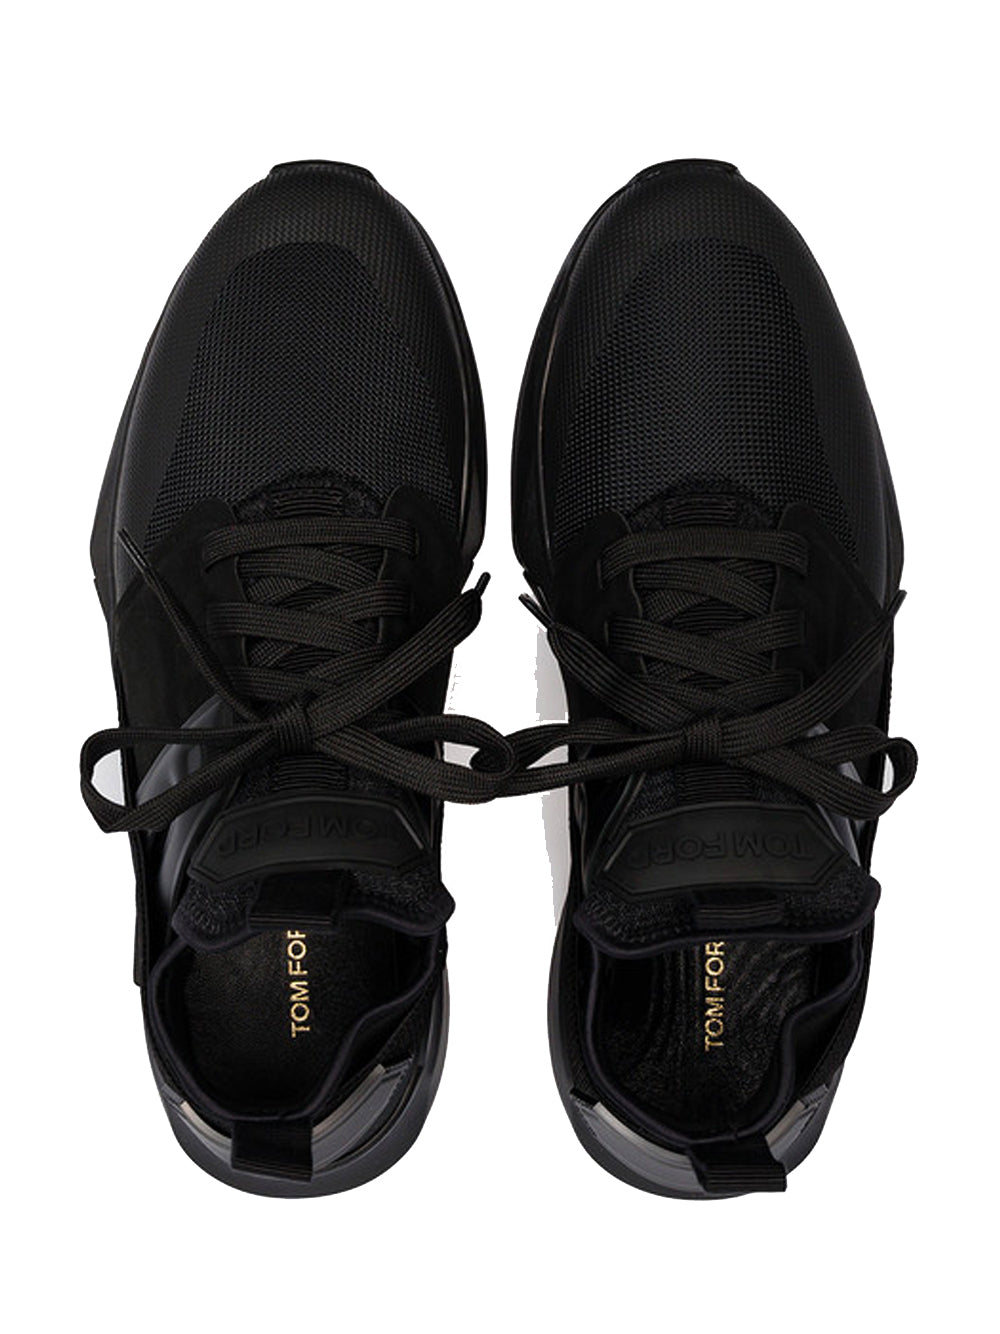 TOM FORD Jago Sneakers Black/Black - MAISONDEFASHION.COM